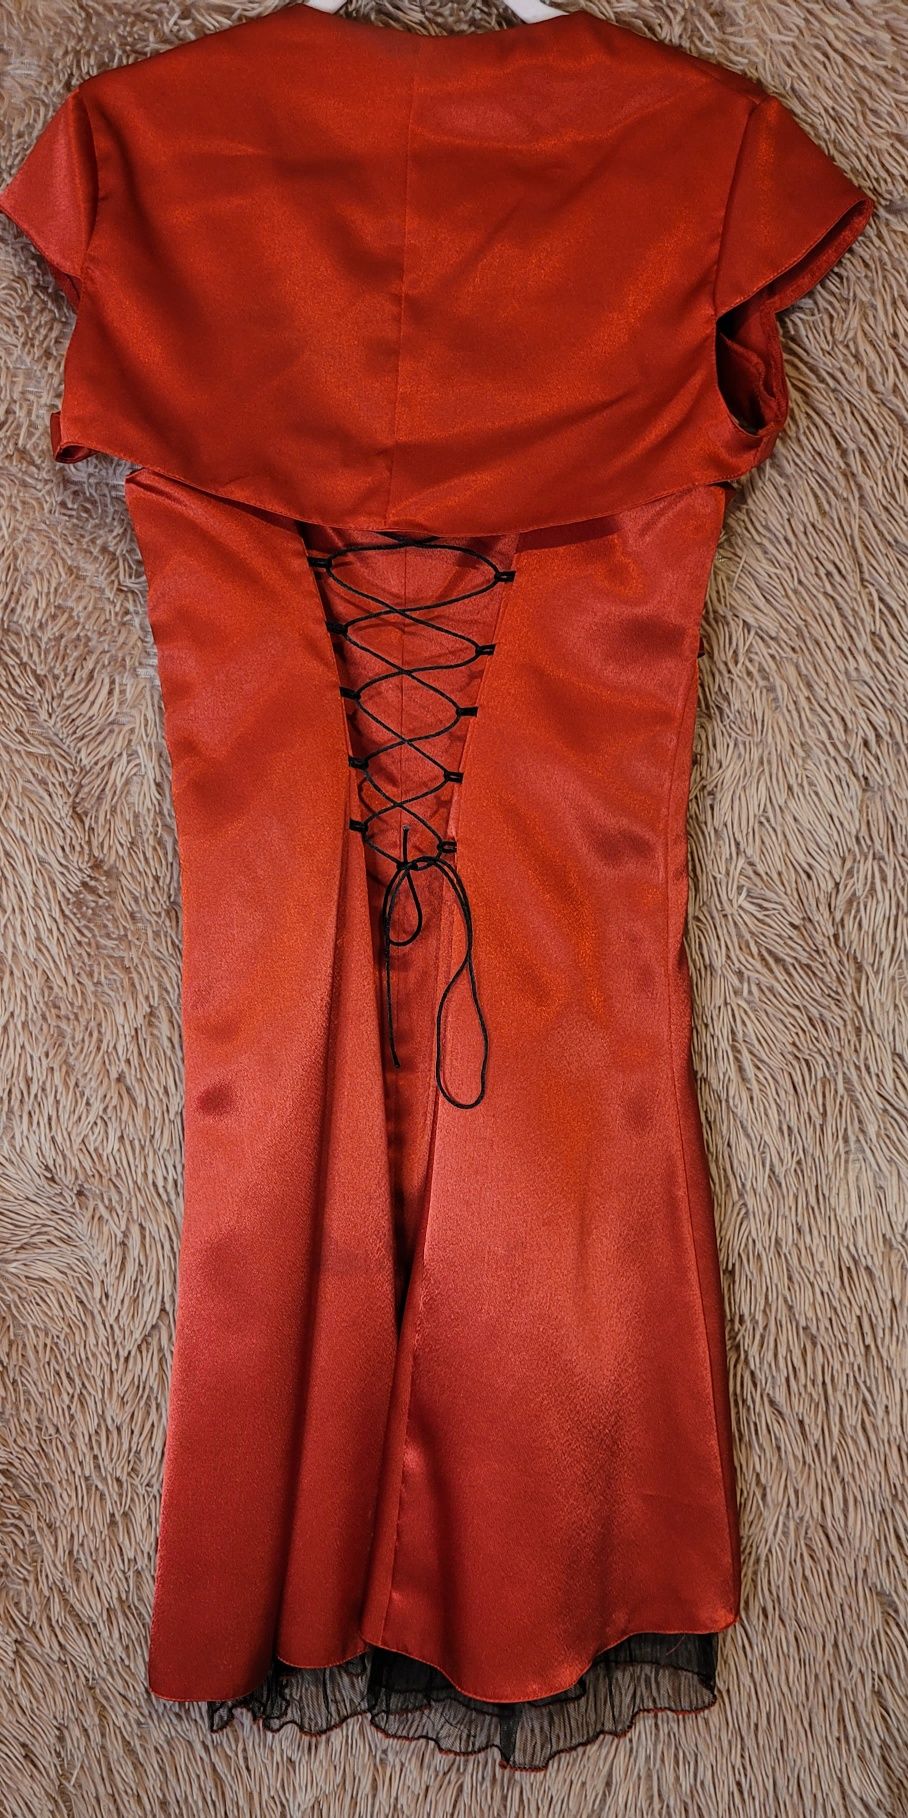 Czerwona sukienka z bolerkiem  rozmiar M